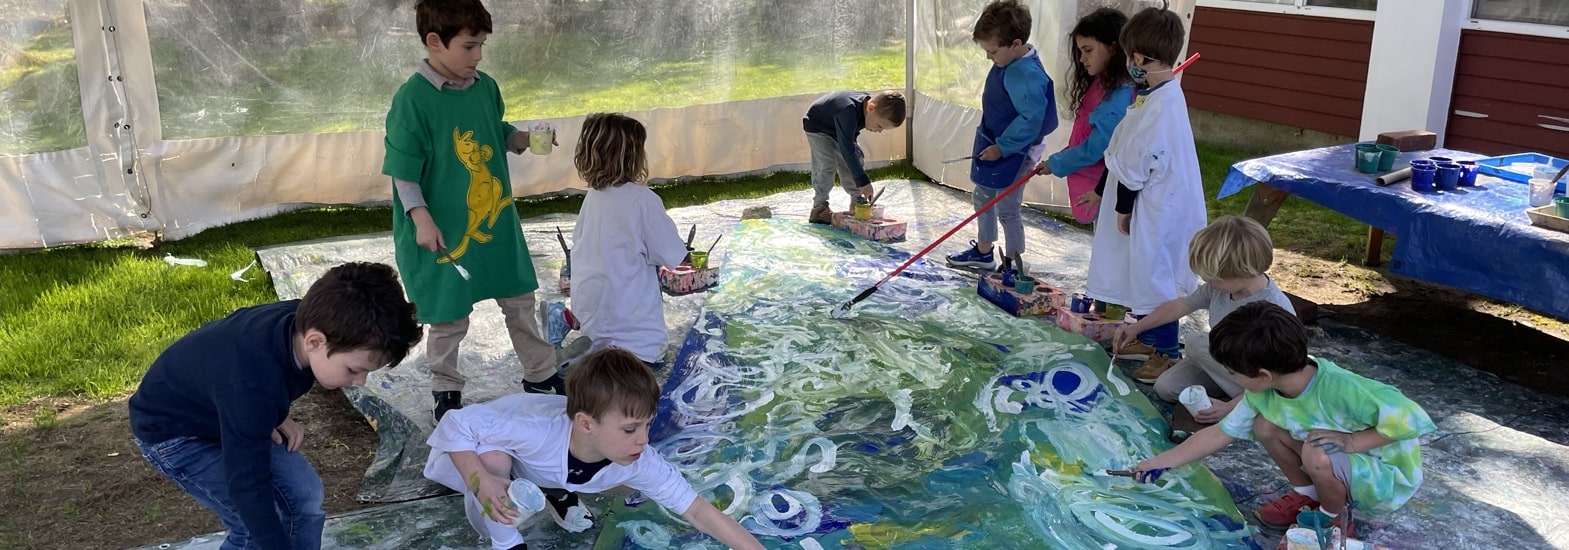 Children exploring floor paint